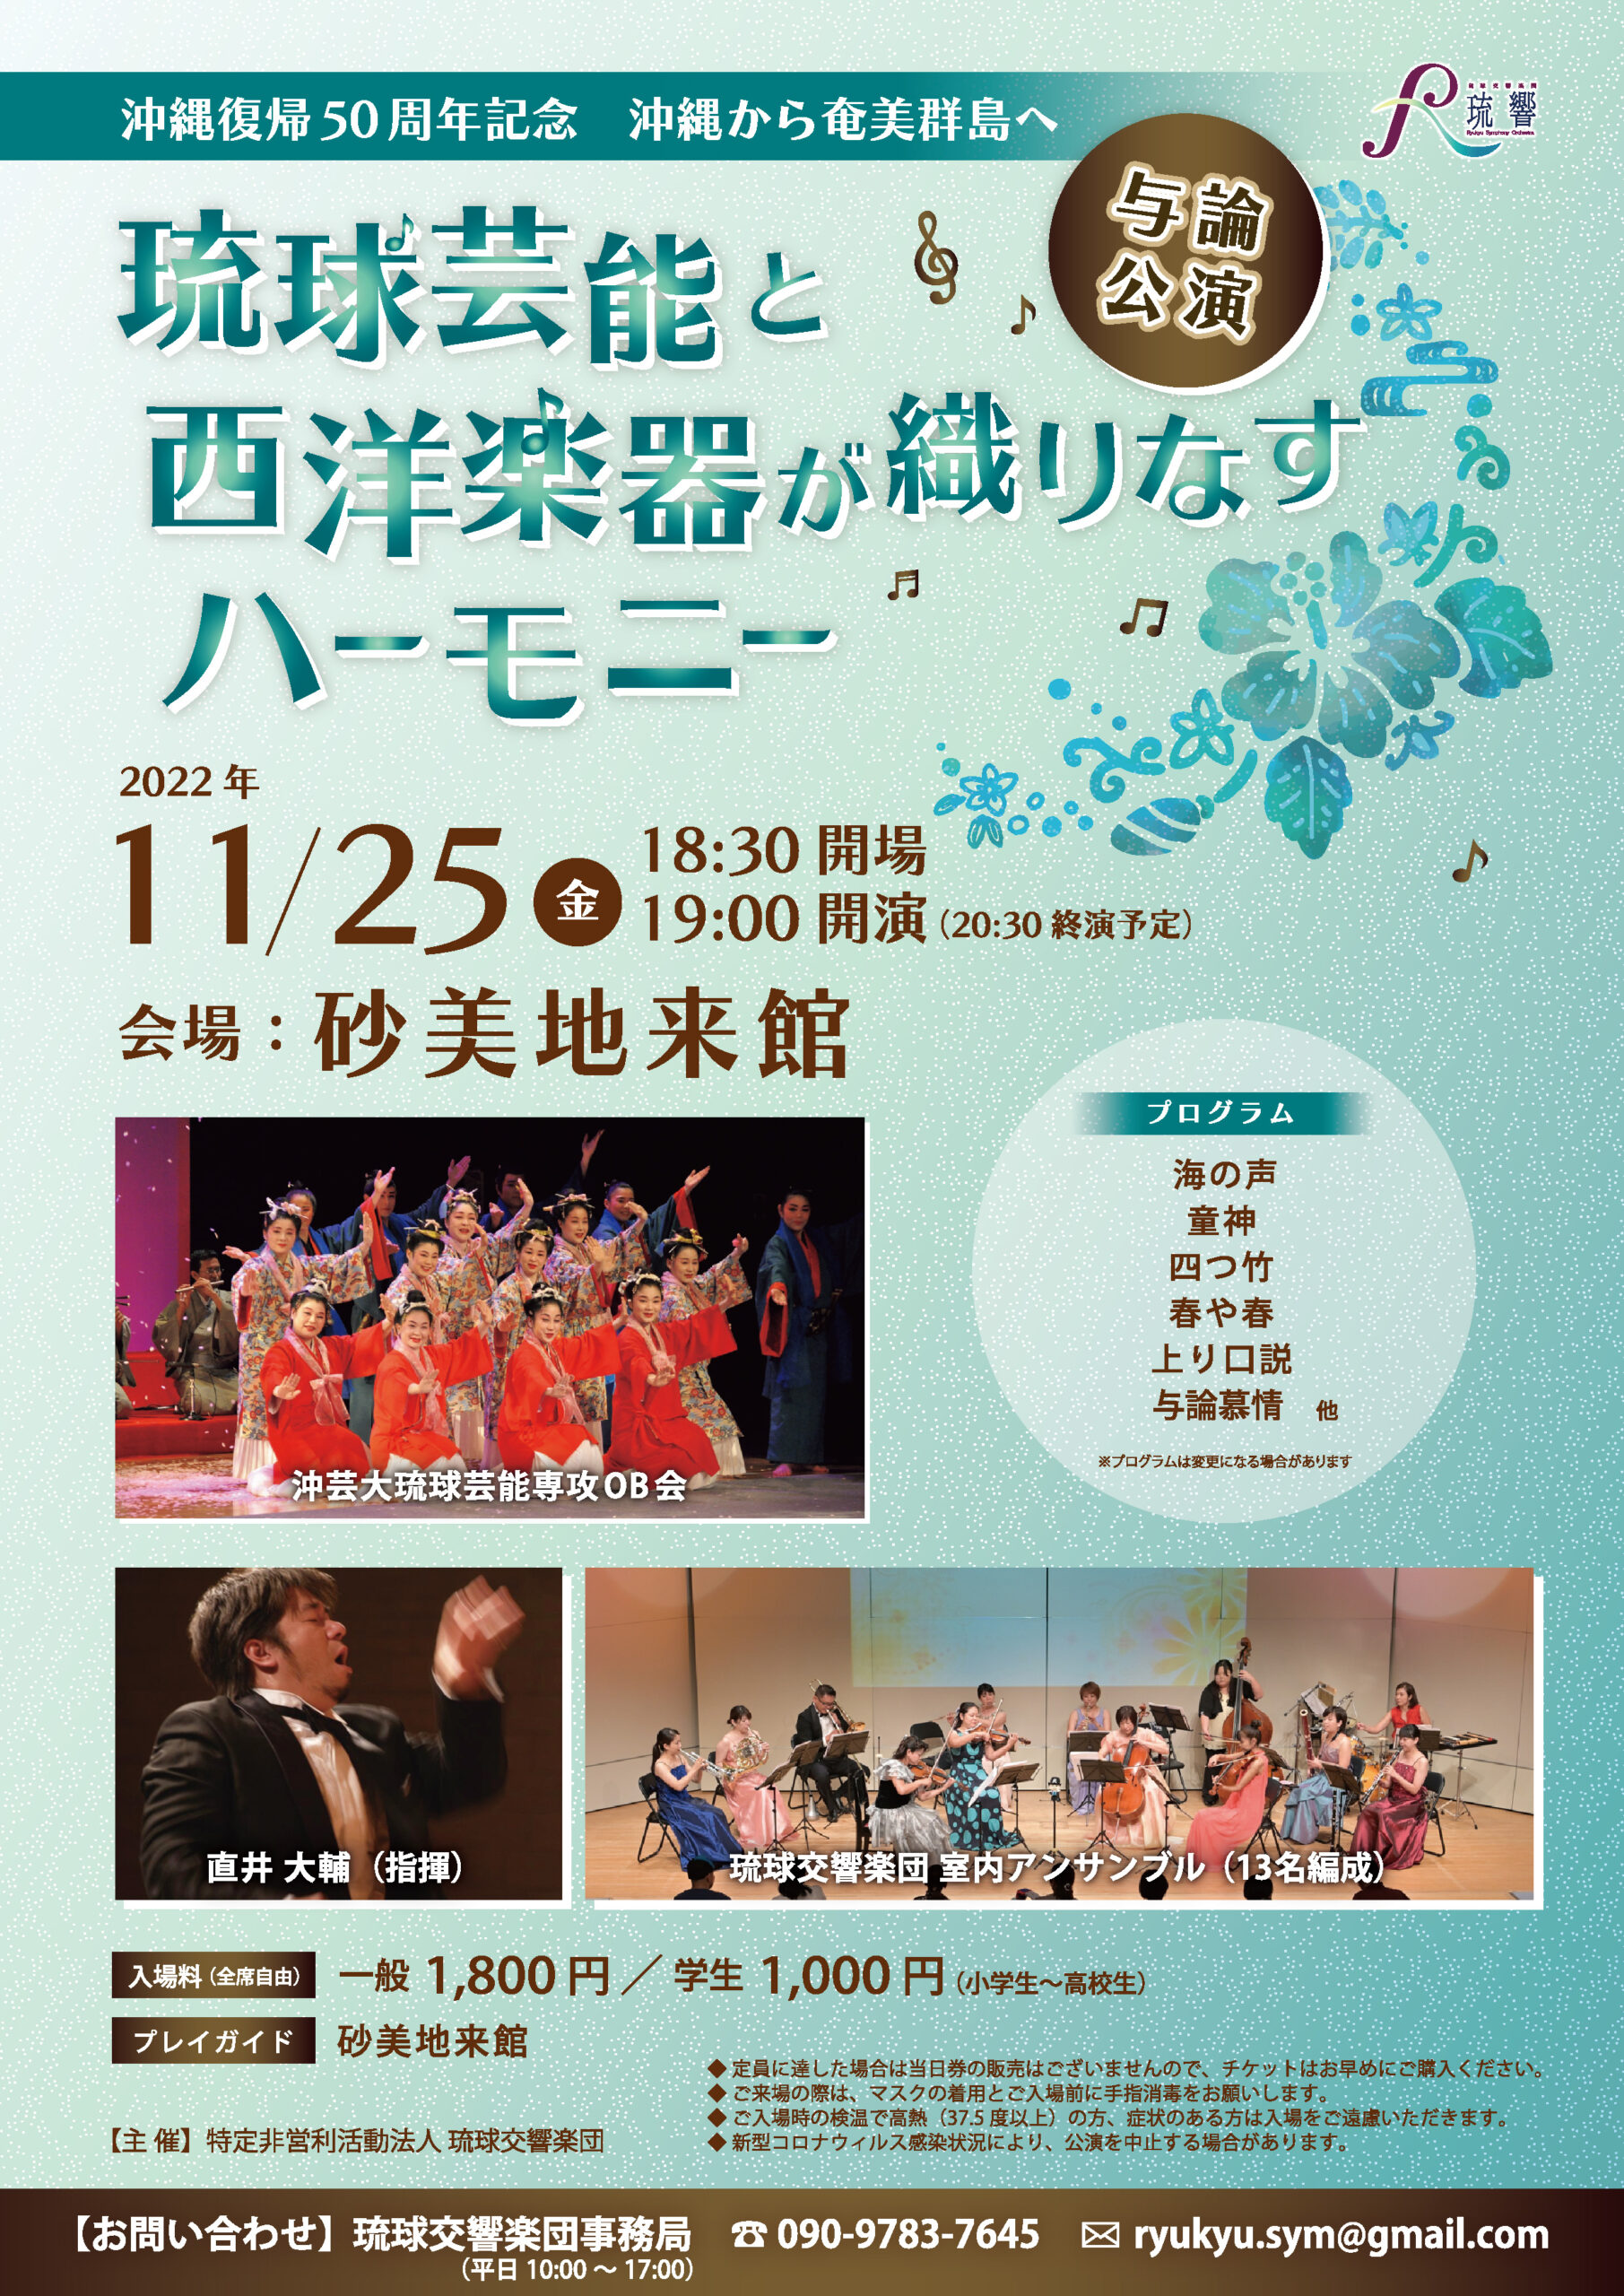 琉球芸能と西洋楽器が織りなすハーモニー与論公演   特定非営利活動